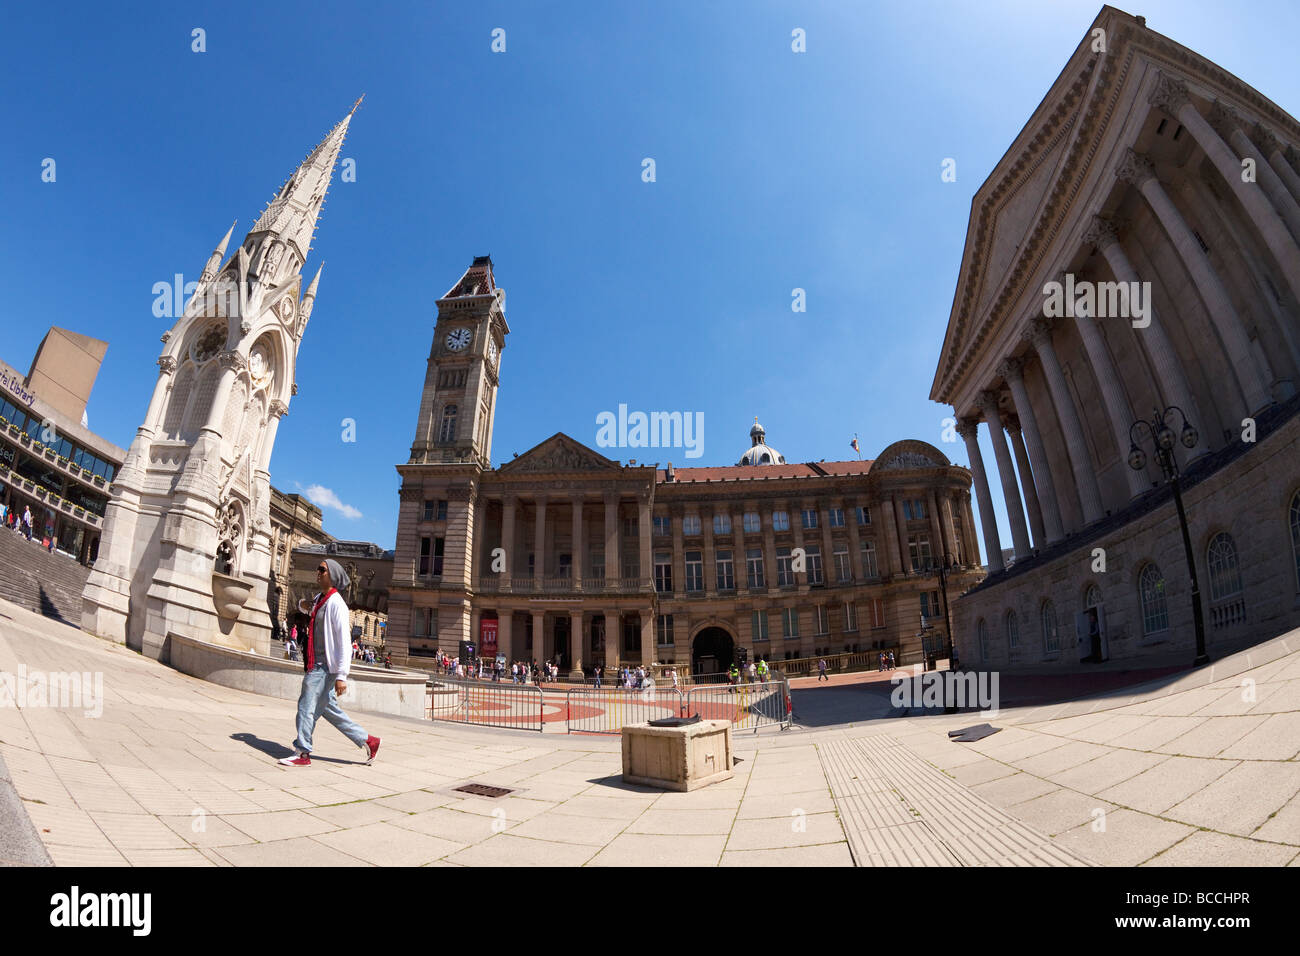 Joseph Chamberlain Quadrat und Brunnen Central Library Rathaus Birmingham West Midlands England UK Großbritannien GB groß Stockfoto